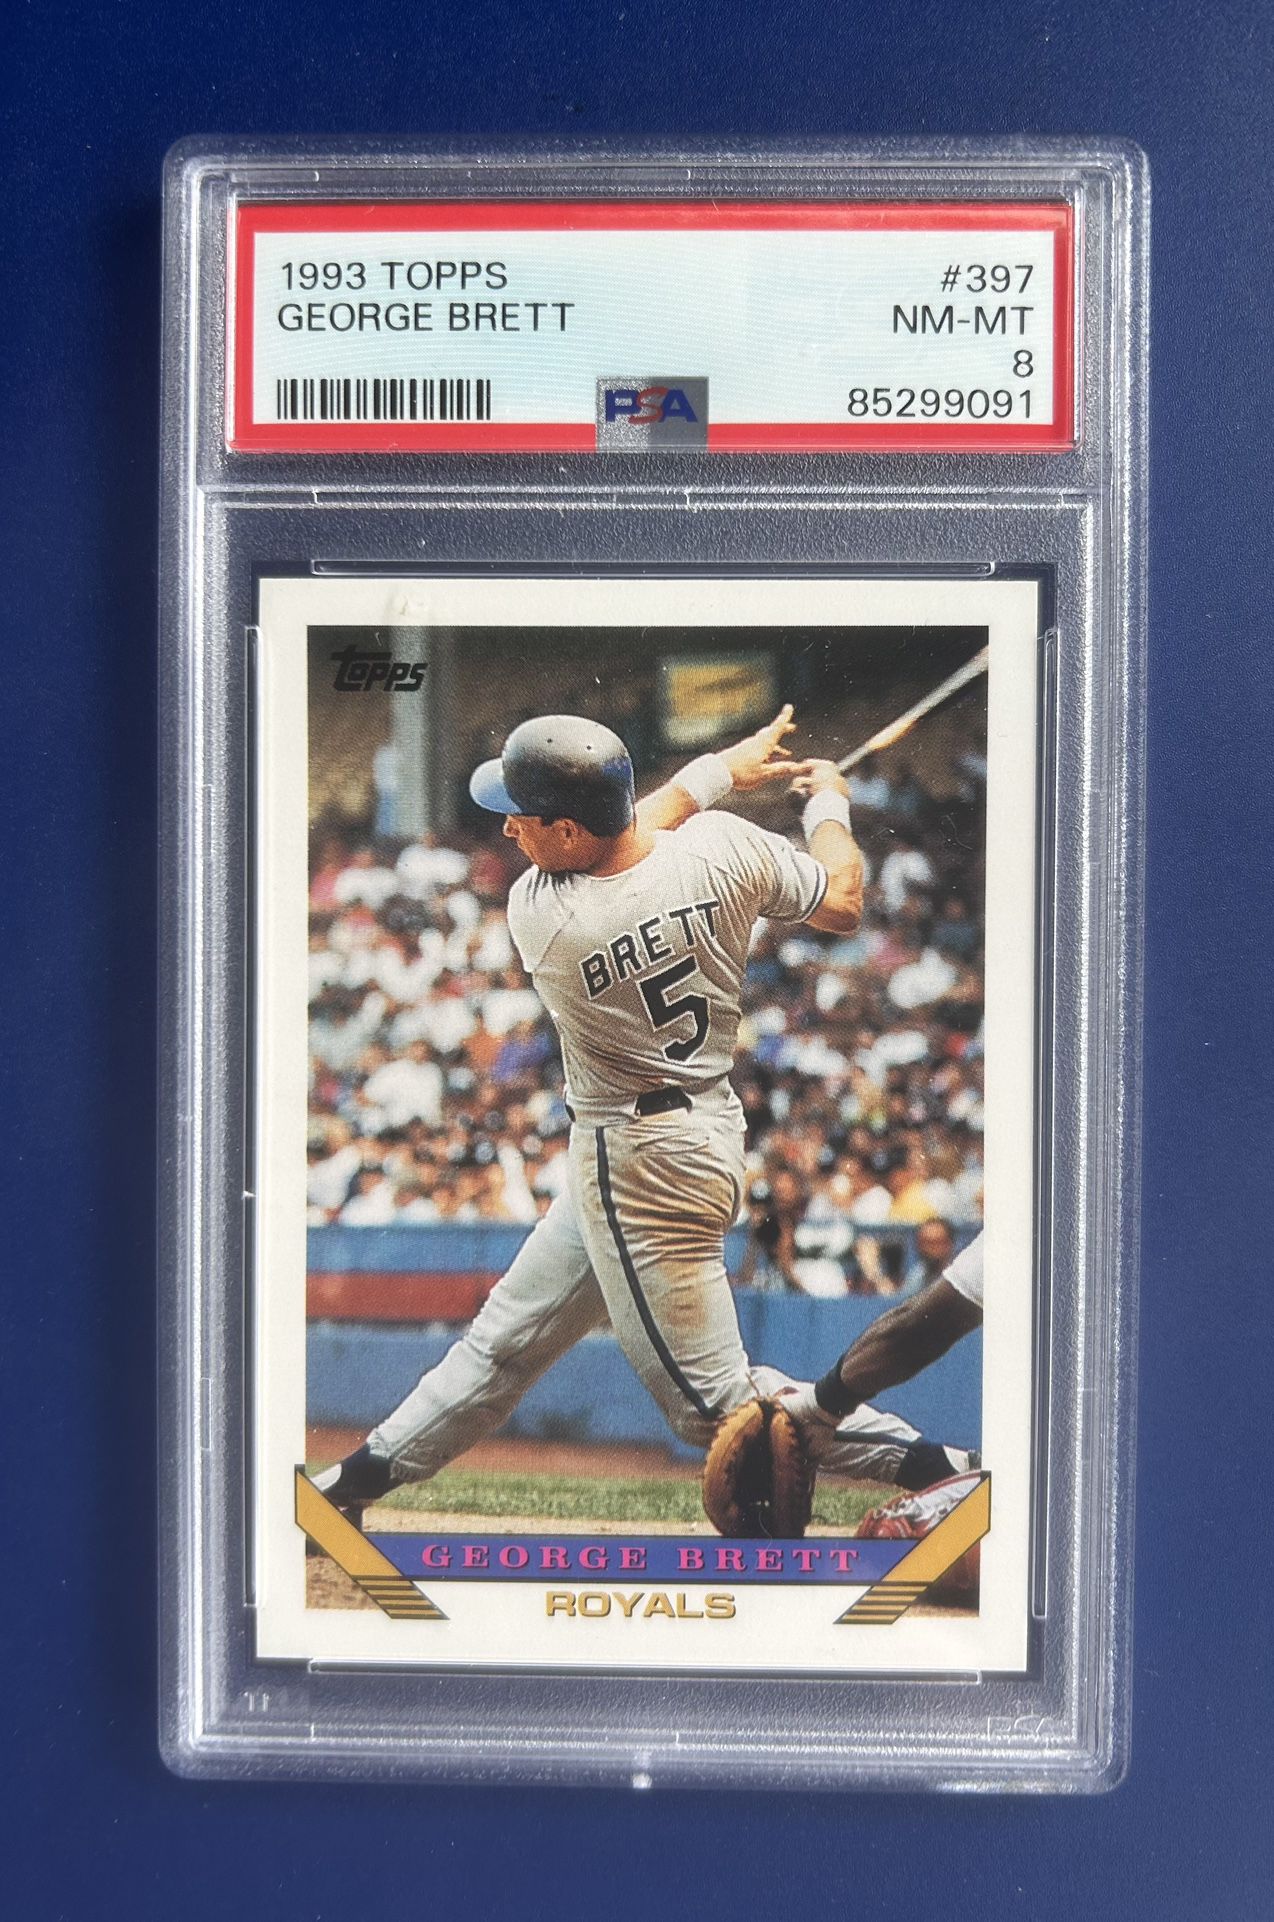 1993 Topps George Brett Baseball Card Graded PSA 8